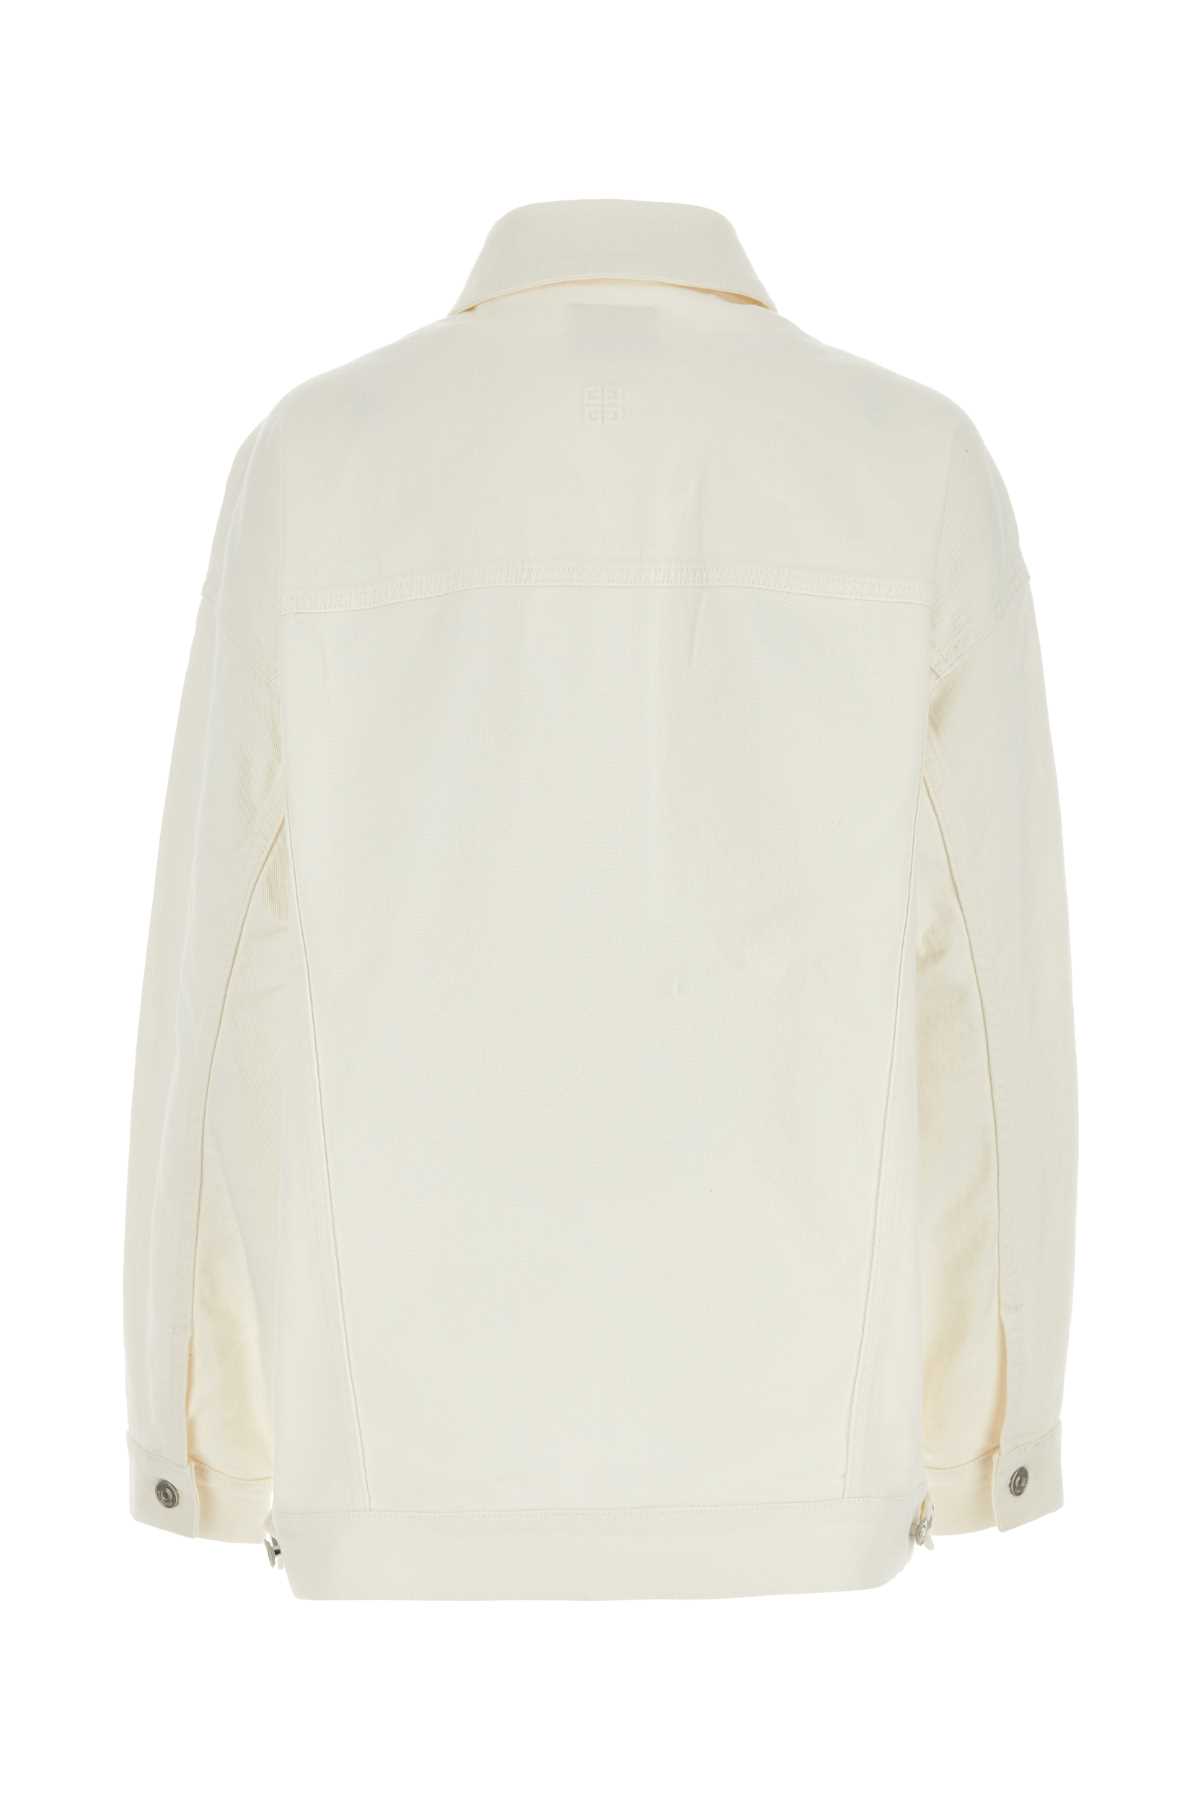 Givenchy White Denim Oversize Jacket